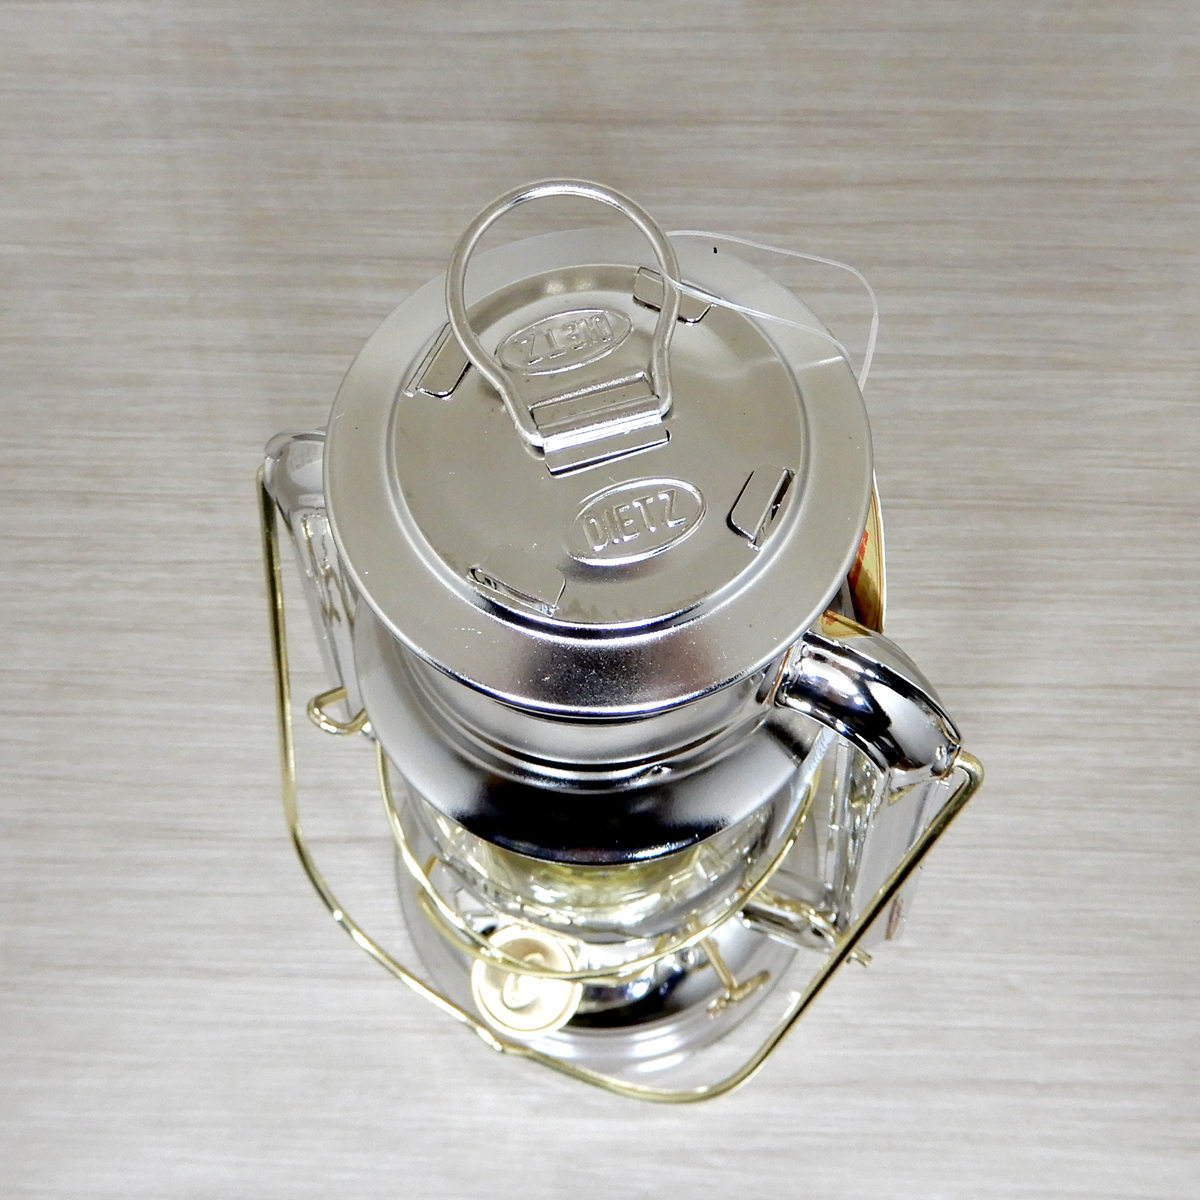 替芯付【送料無料】新品 Dietz #76 Original Oil Lantern - Nickel & Brass Trim【日本未発売】◇デイツ ニッケル 真鍮 ハリケーンランタン_画像9